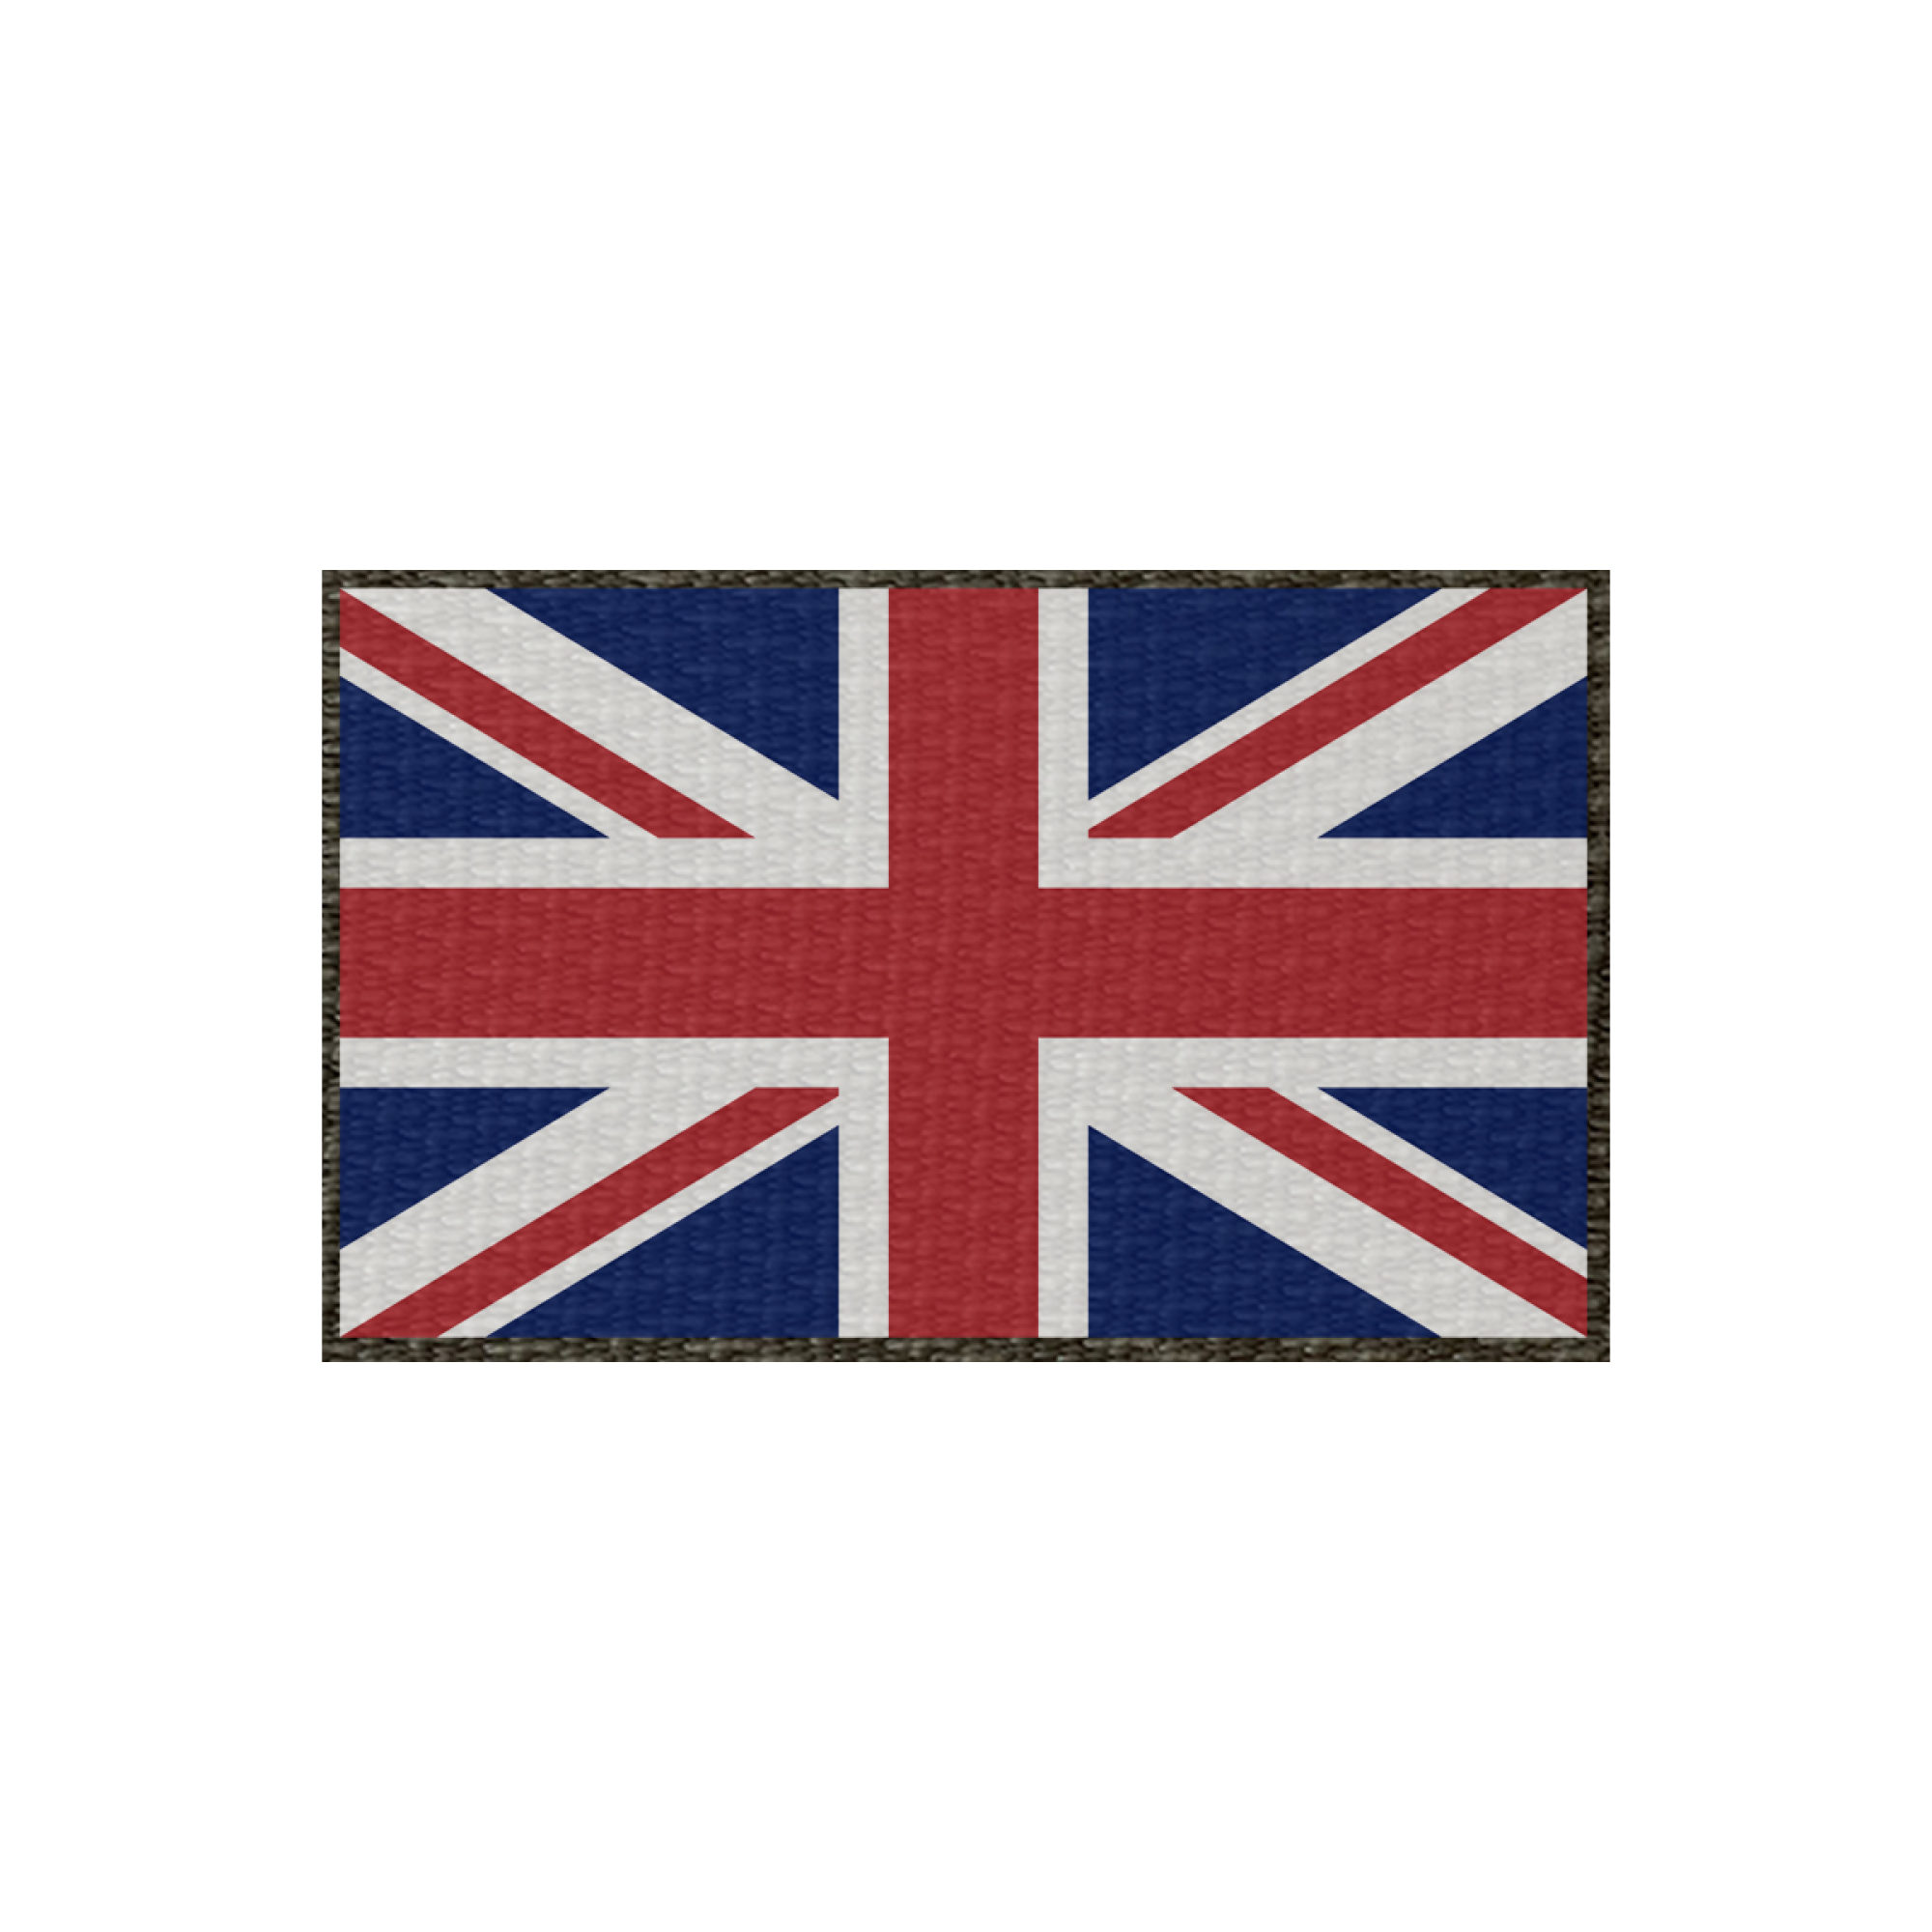 Patch Flagge Großbritannien 50x30mm, Klett